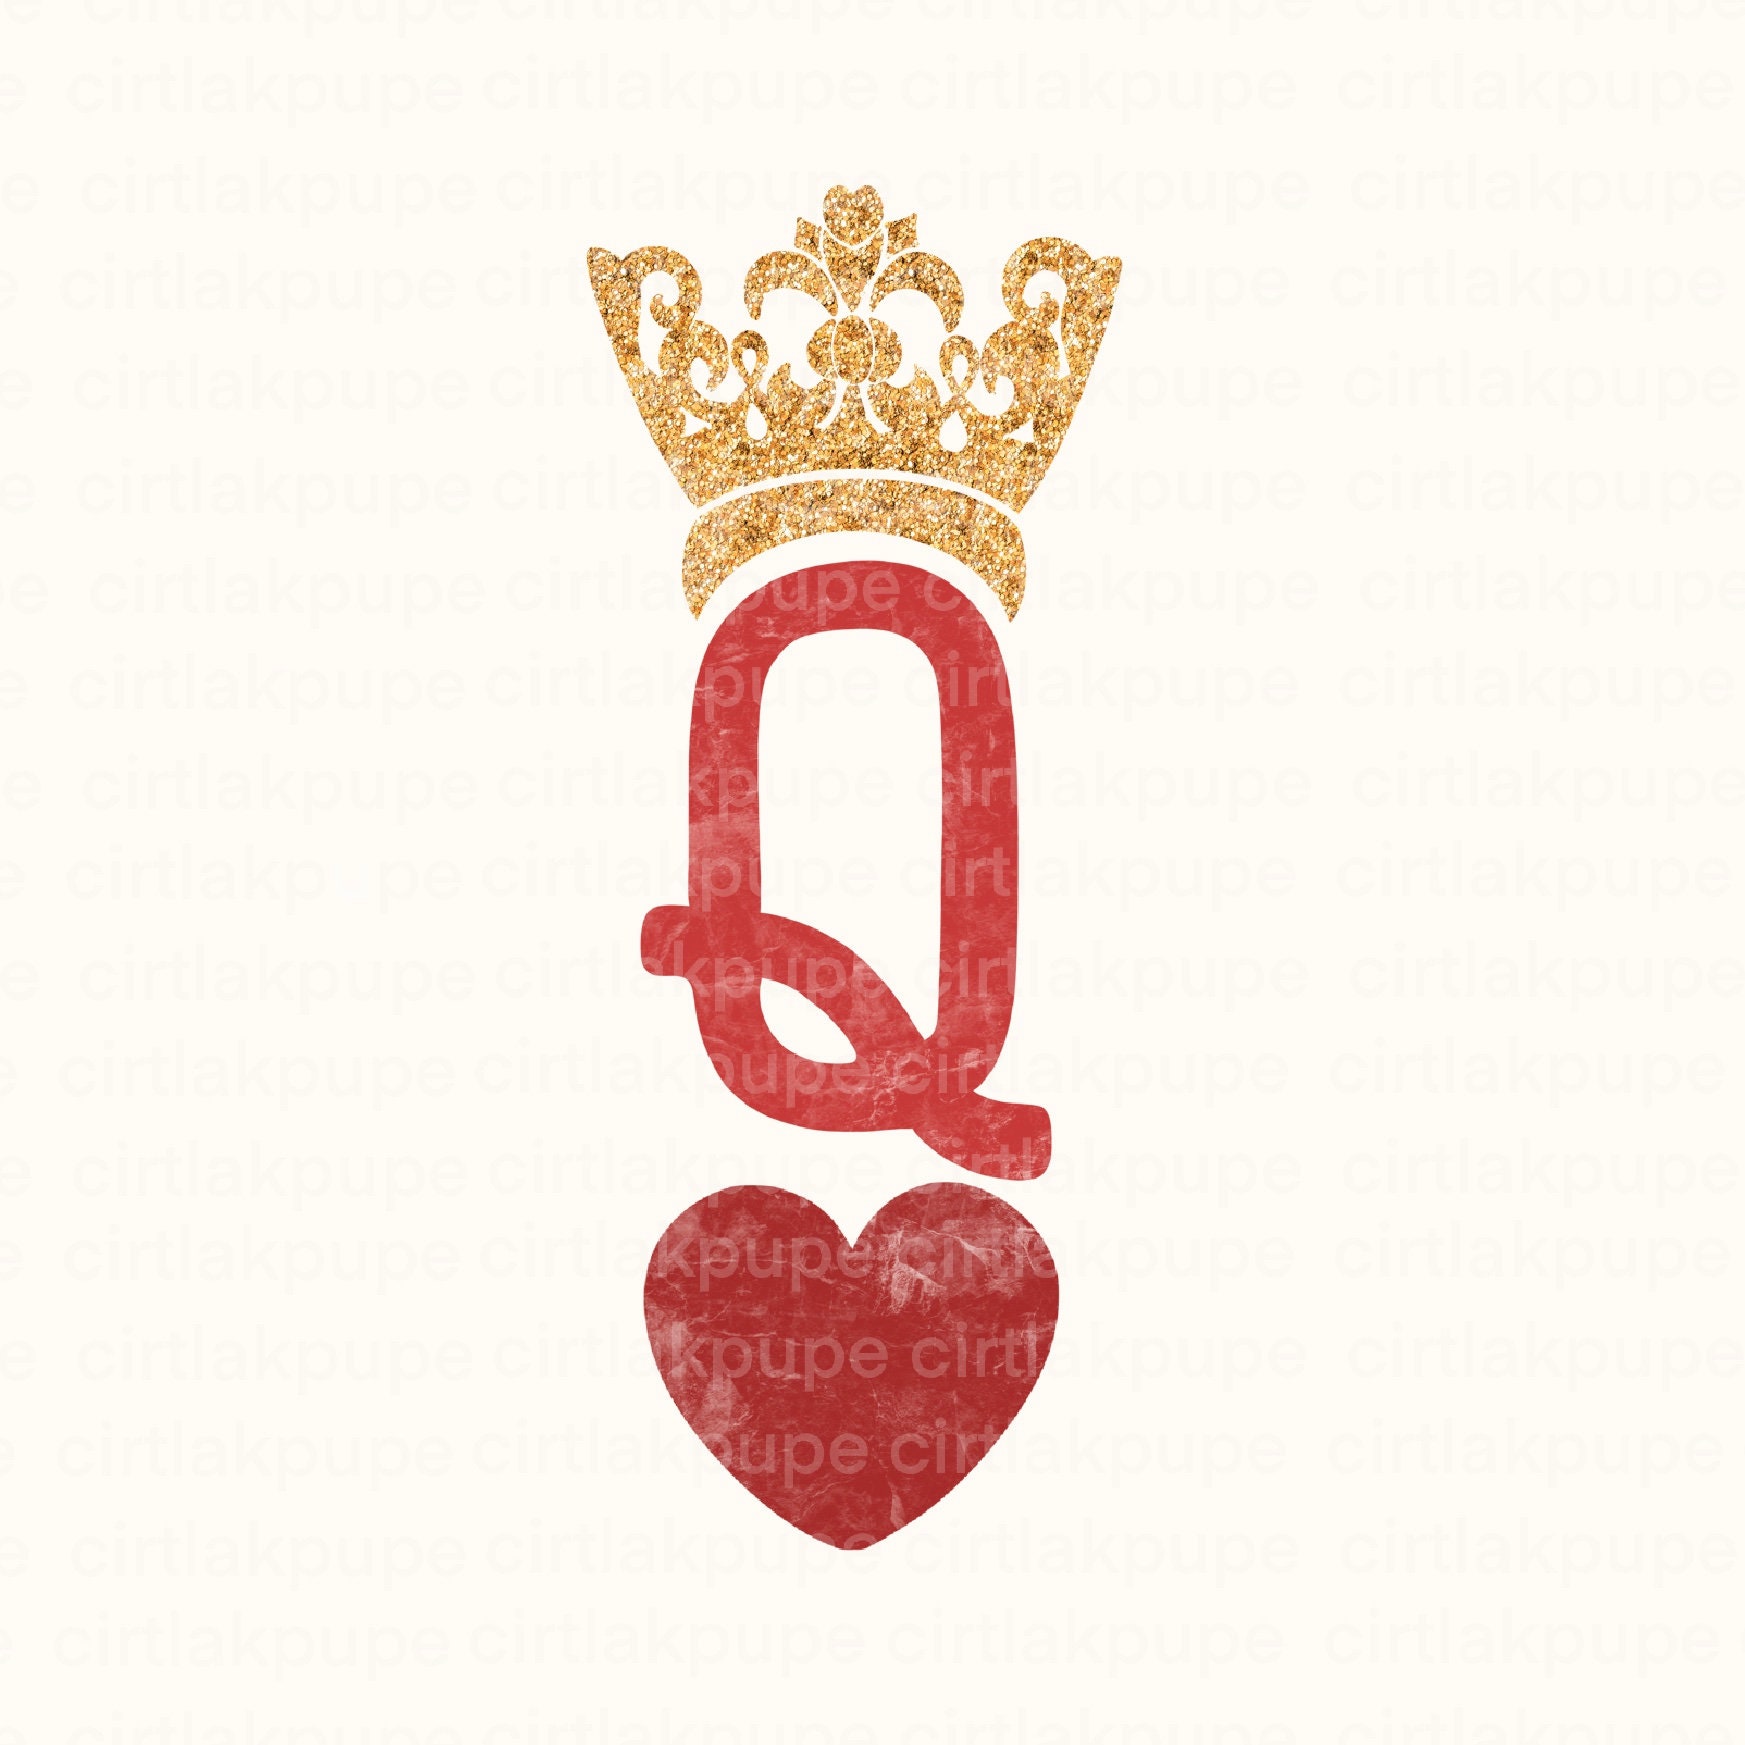 Queen of Hearts Crown, Queen of Hearts Costume, Queen of Heart